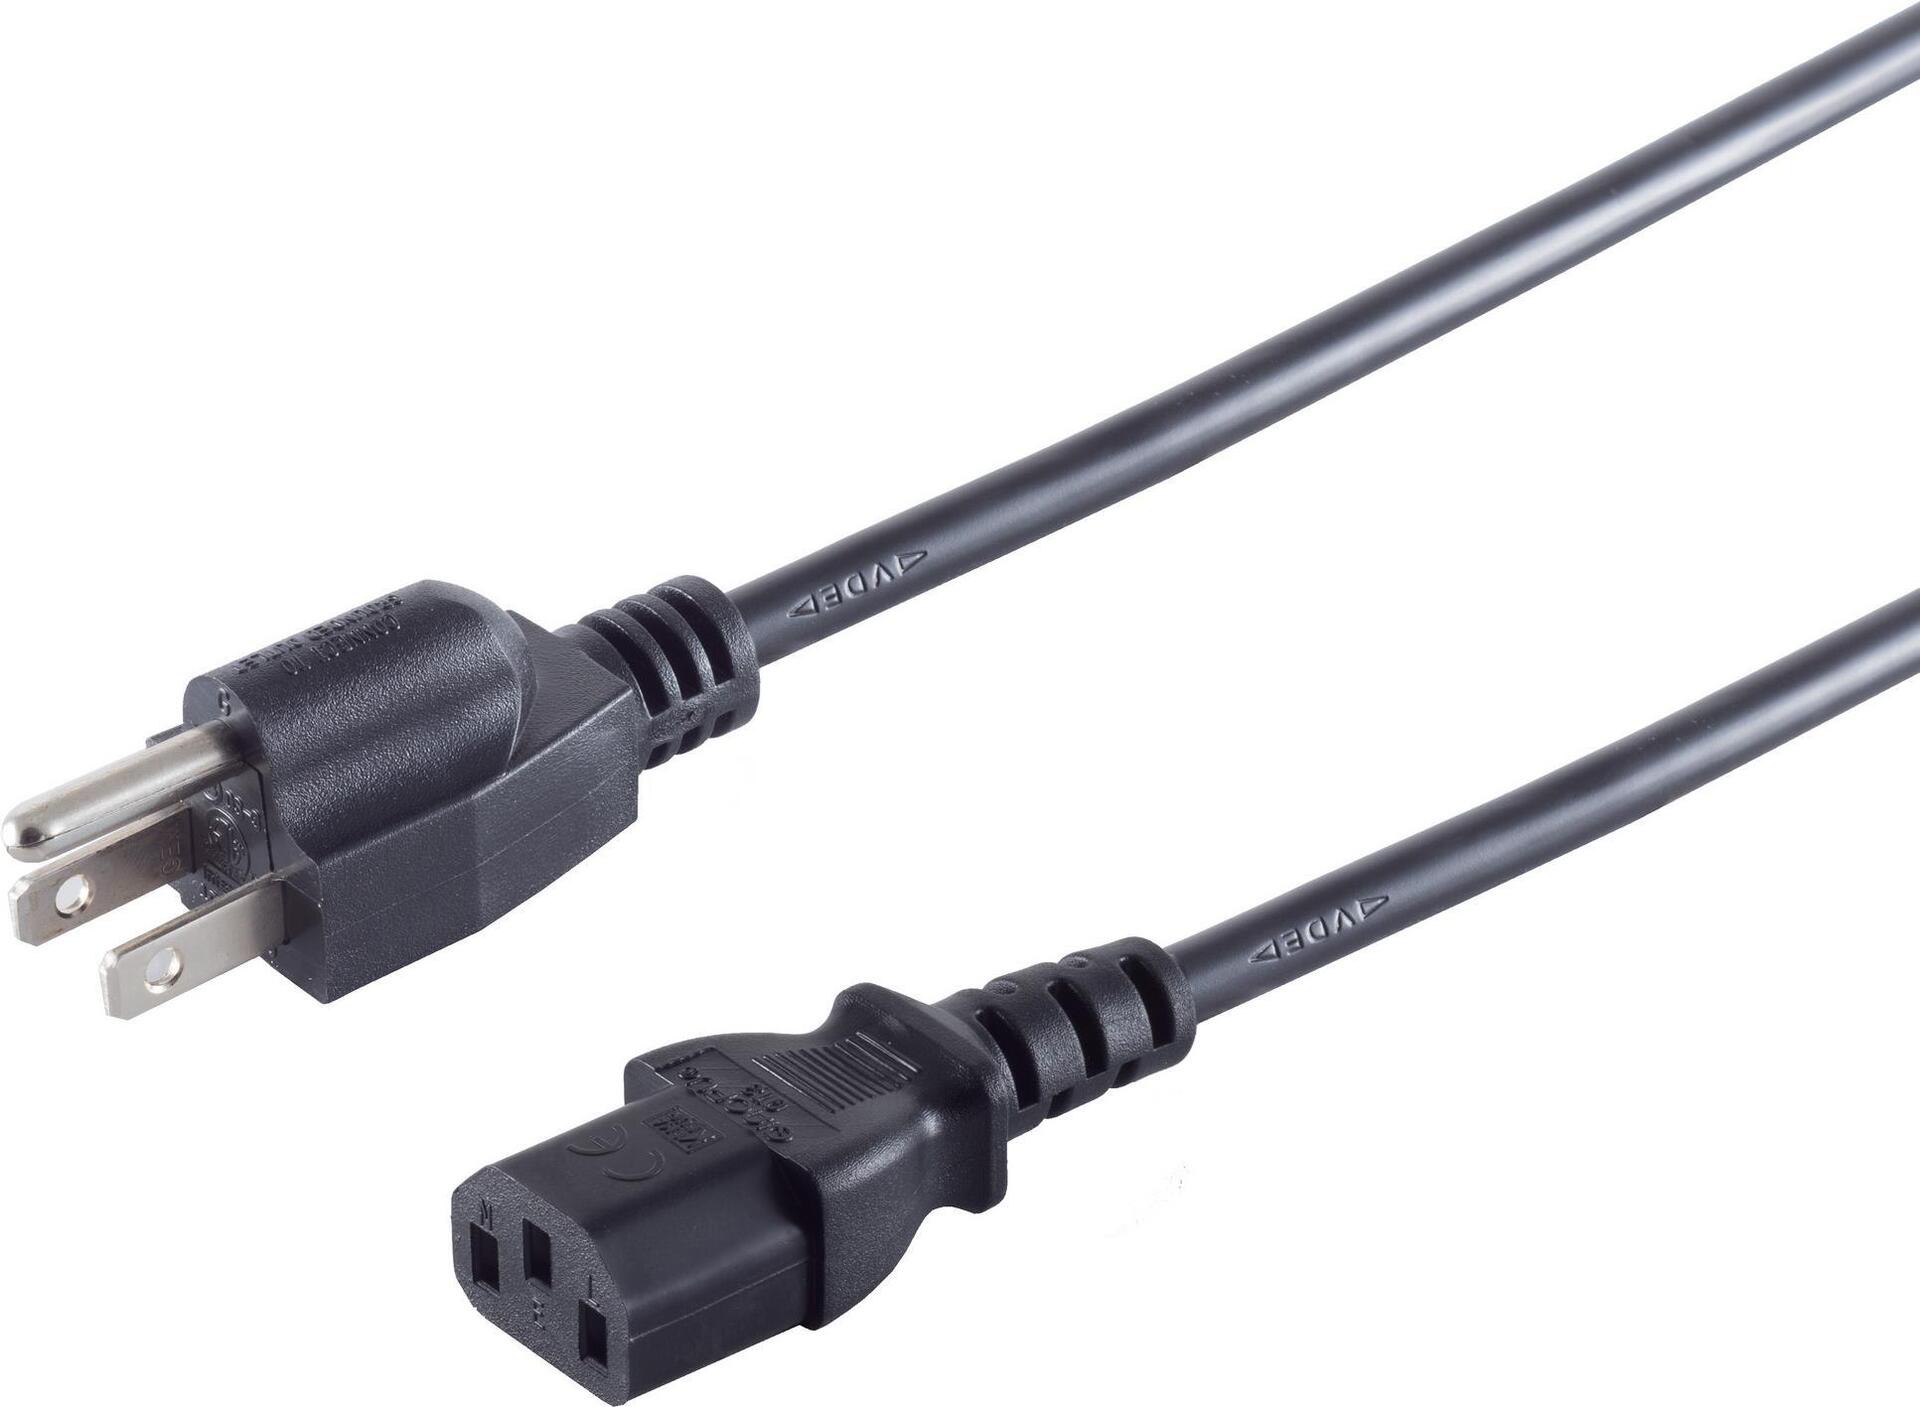 S-CONN S/CONN maximum connectivity Netzanschlusskabel USA Stecker an Kaltgerätebuchse, schwarz, 1,8